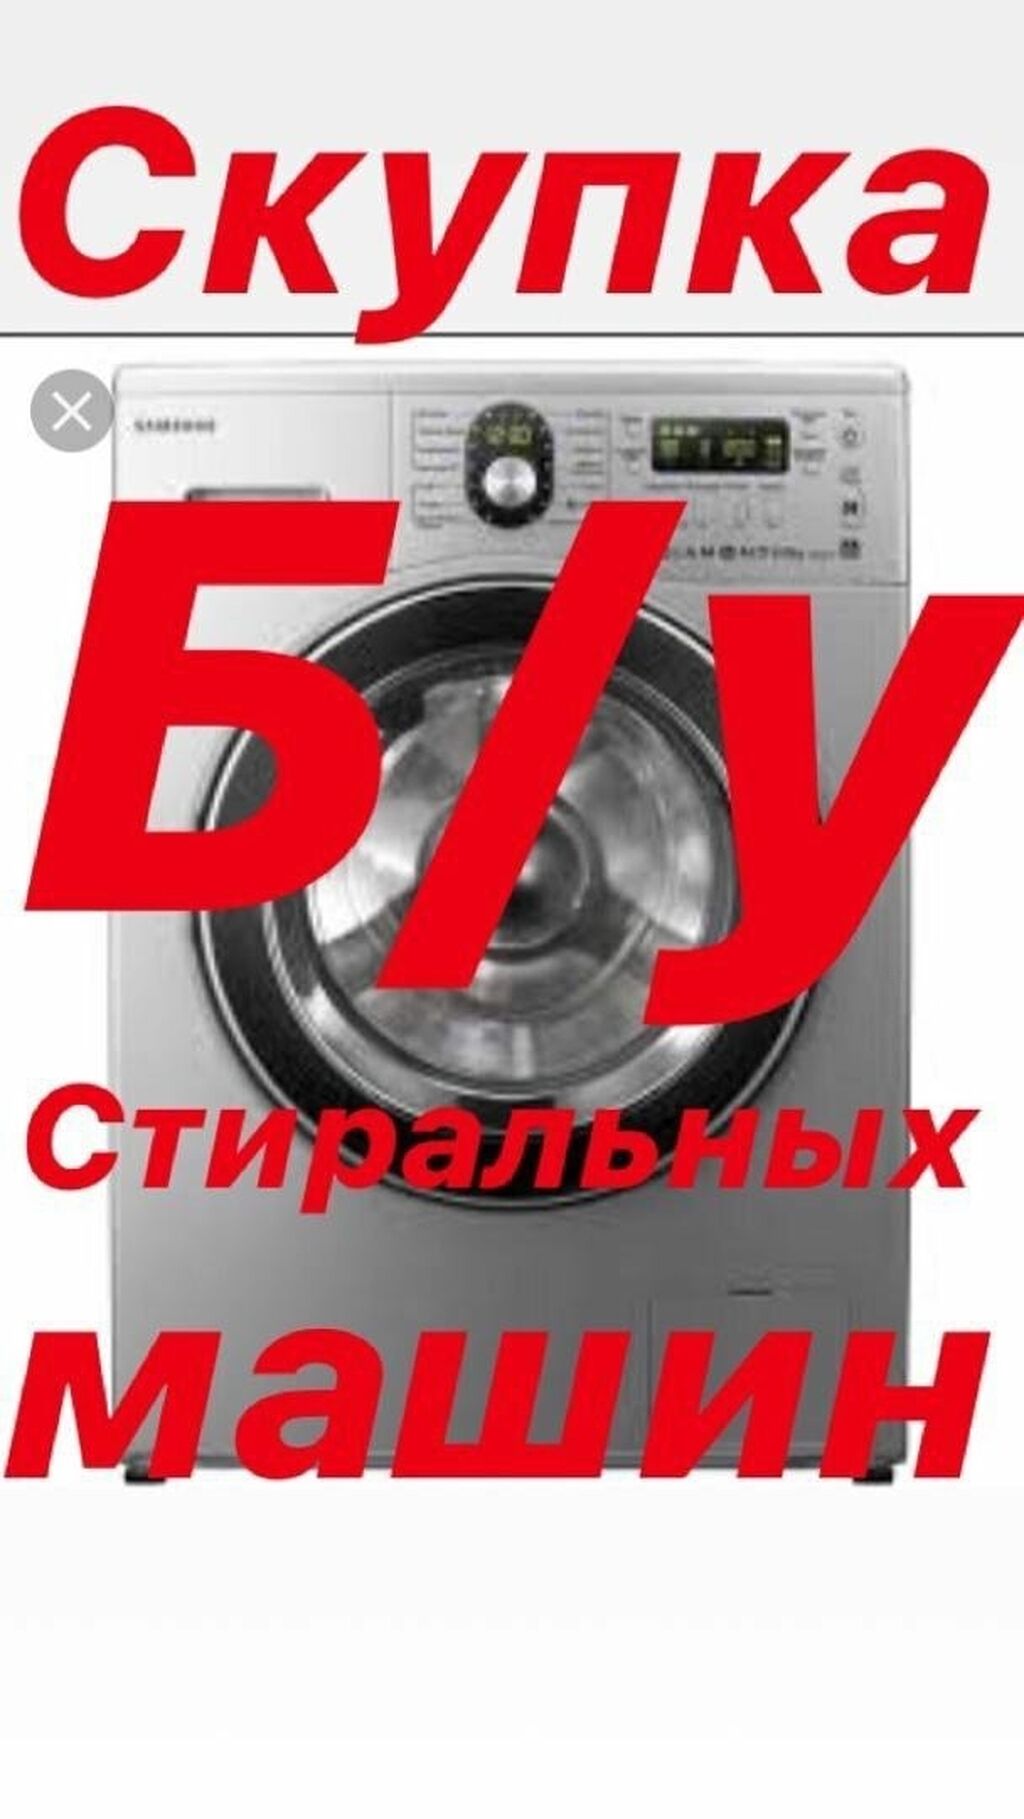 Скупка стиральных машин в новосибирске. Скупка стиральных машин. Скупаю Стиральные машинки. Выкуп стиральных машин. Выкуп утилизация стиральных машин.